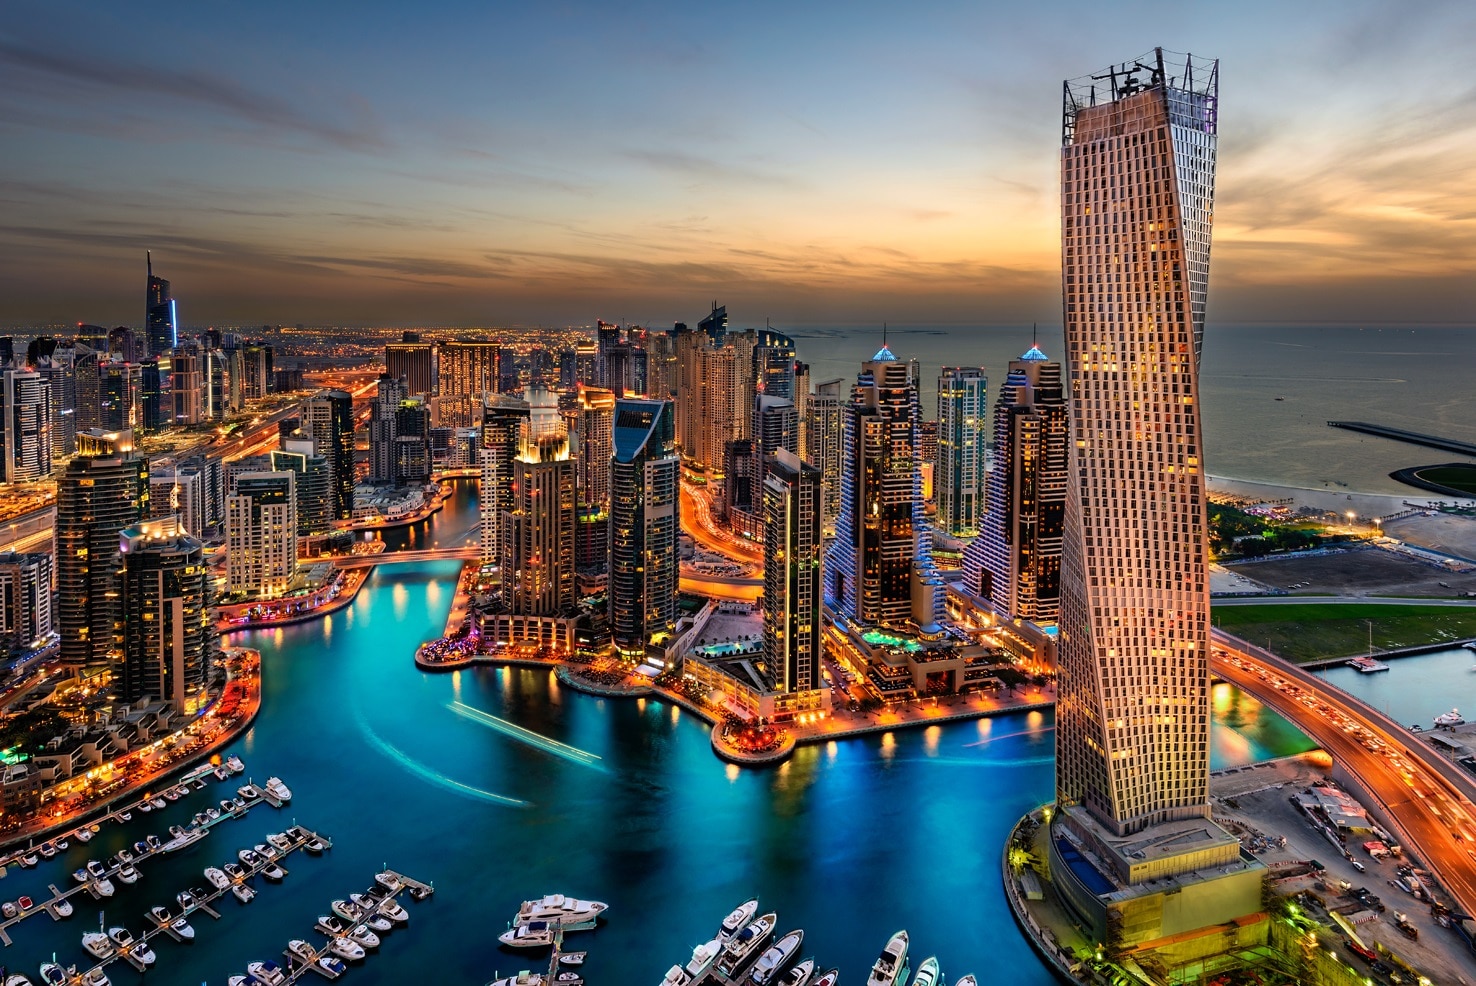 Dubai-city-startup-innovation-tech-tie-dubai